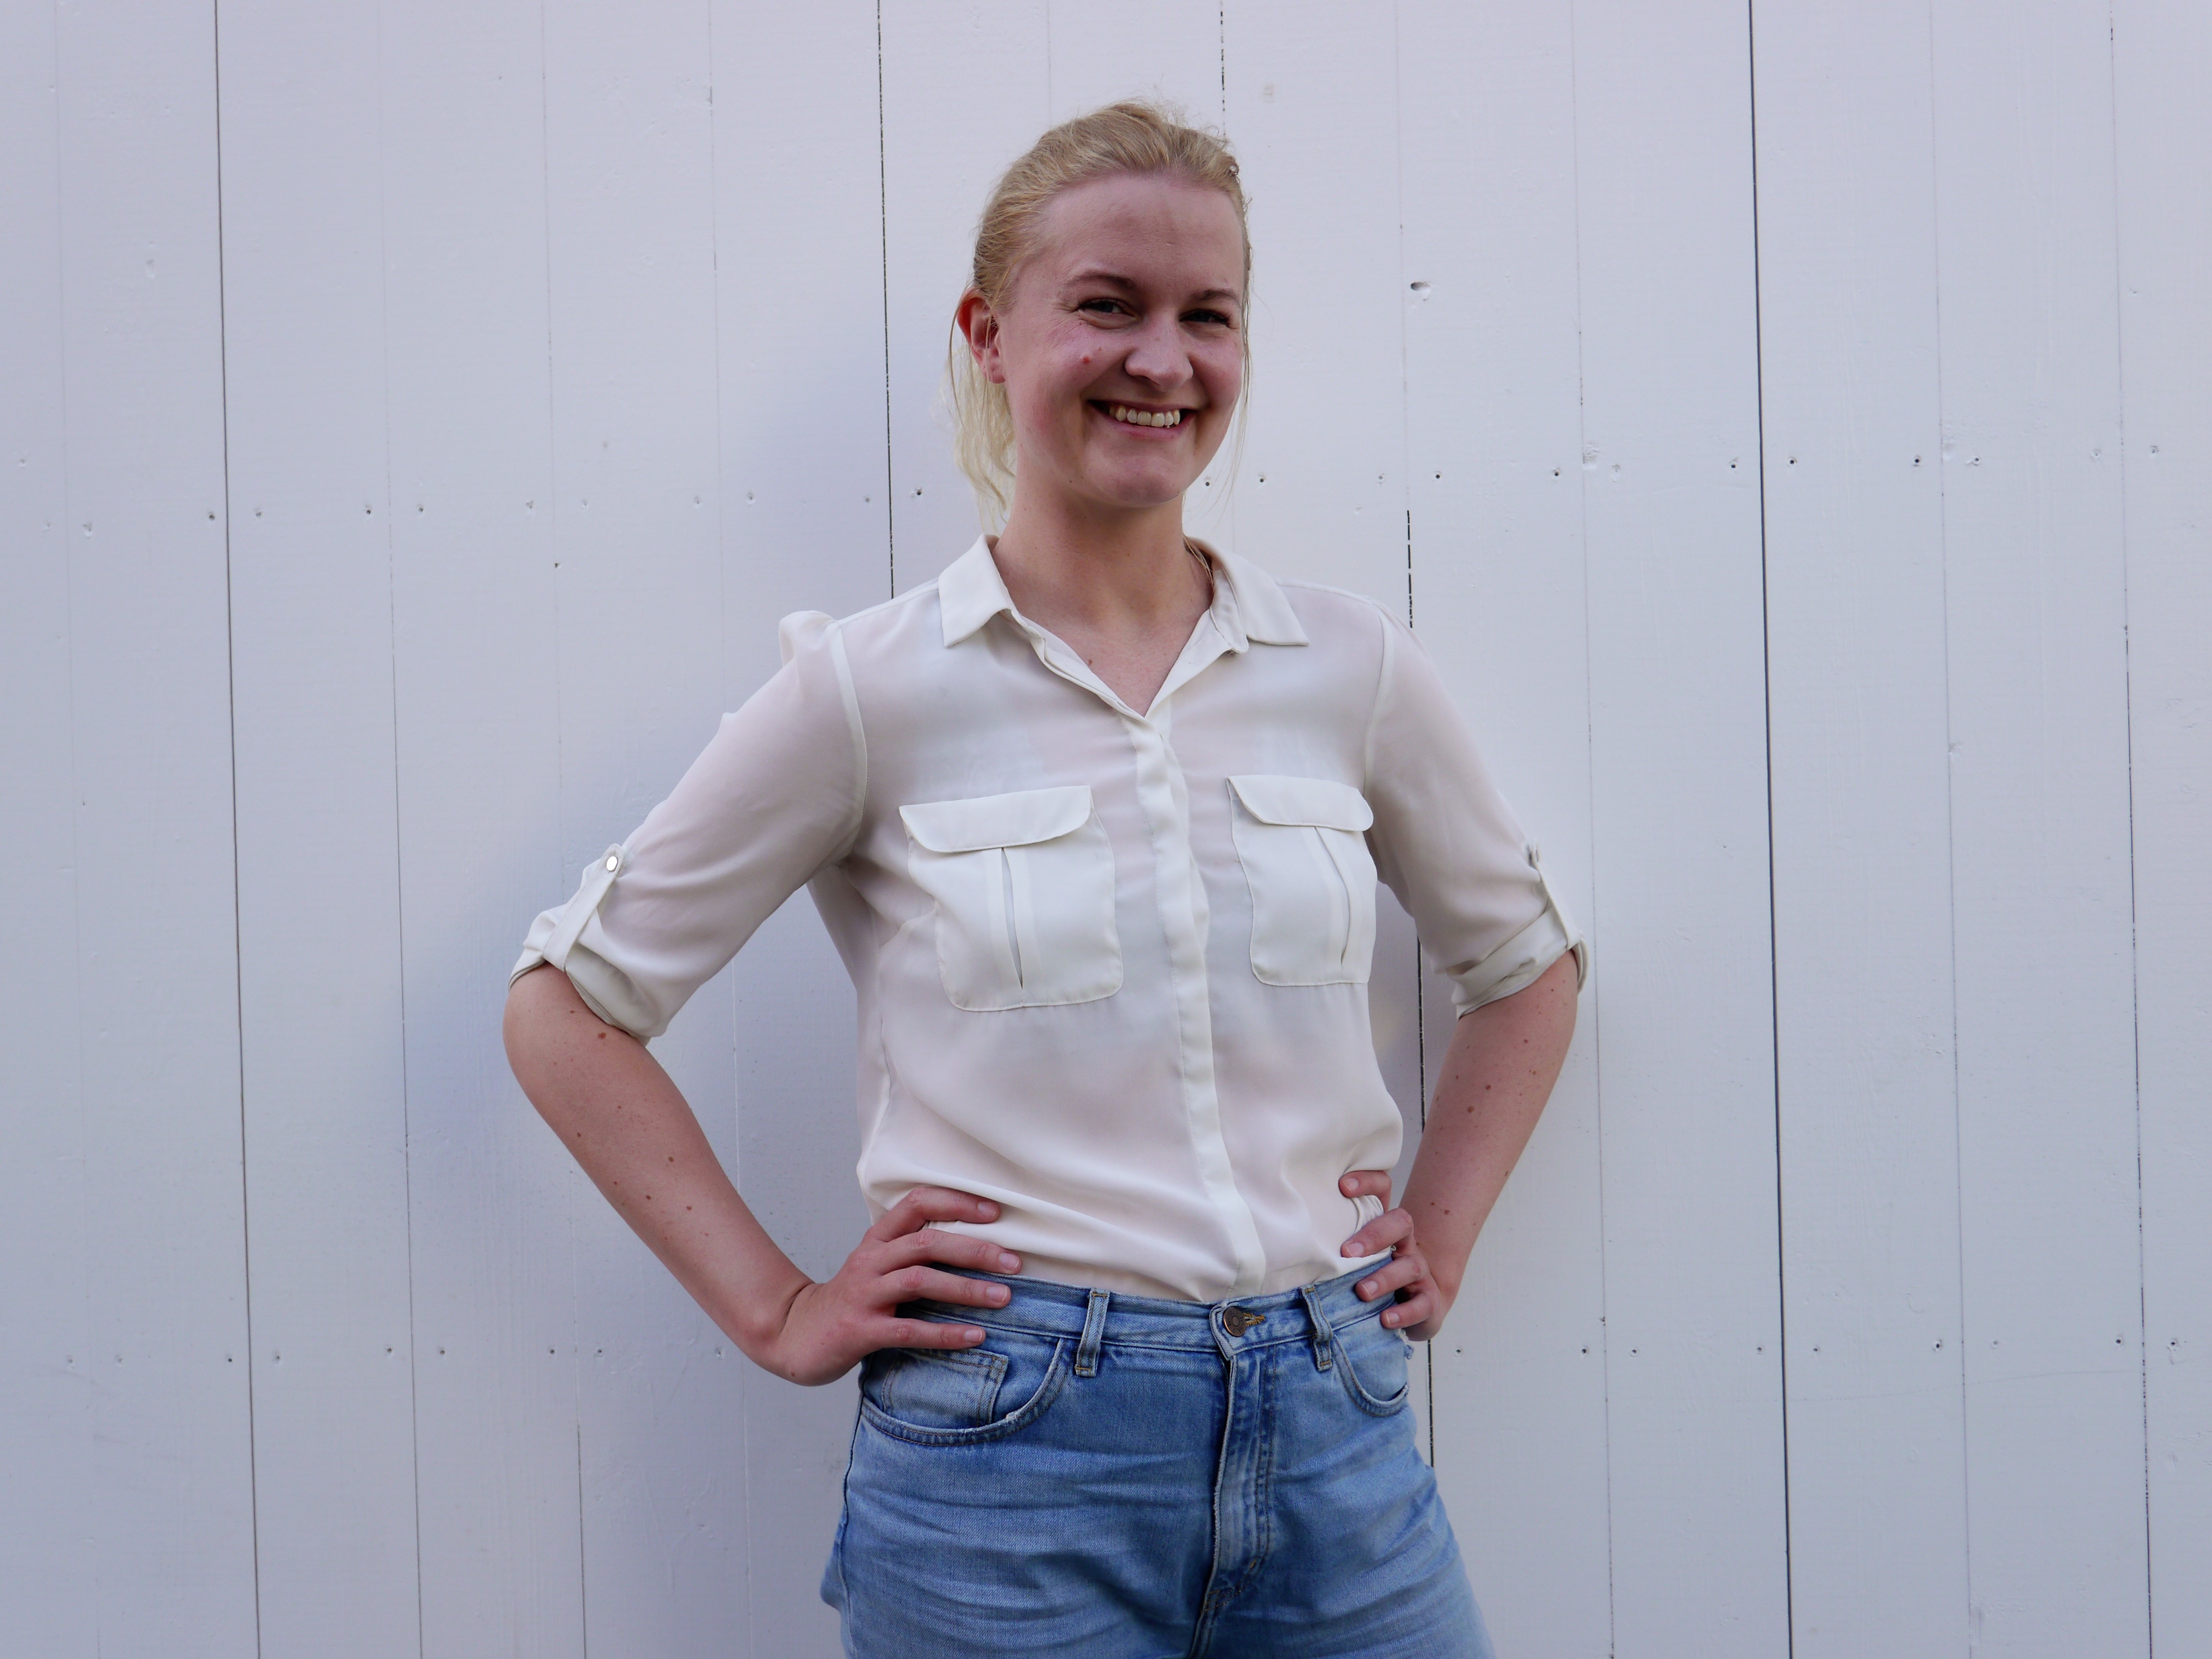 Ung og entusiastisk. Marie Jacobsen Lauvås (30) ble i mars valgt inn i styret til Næringsforeningen i Trondheimsregionen som det yngste styremedlemmet noensinne i organisasjonen. 